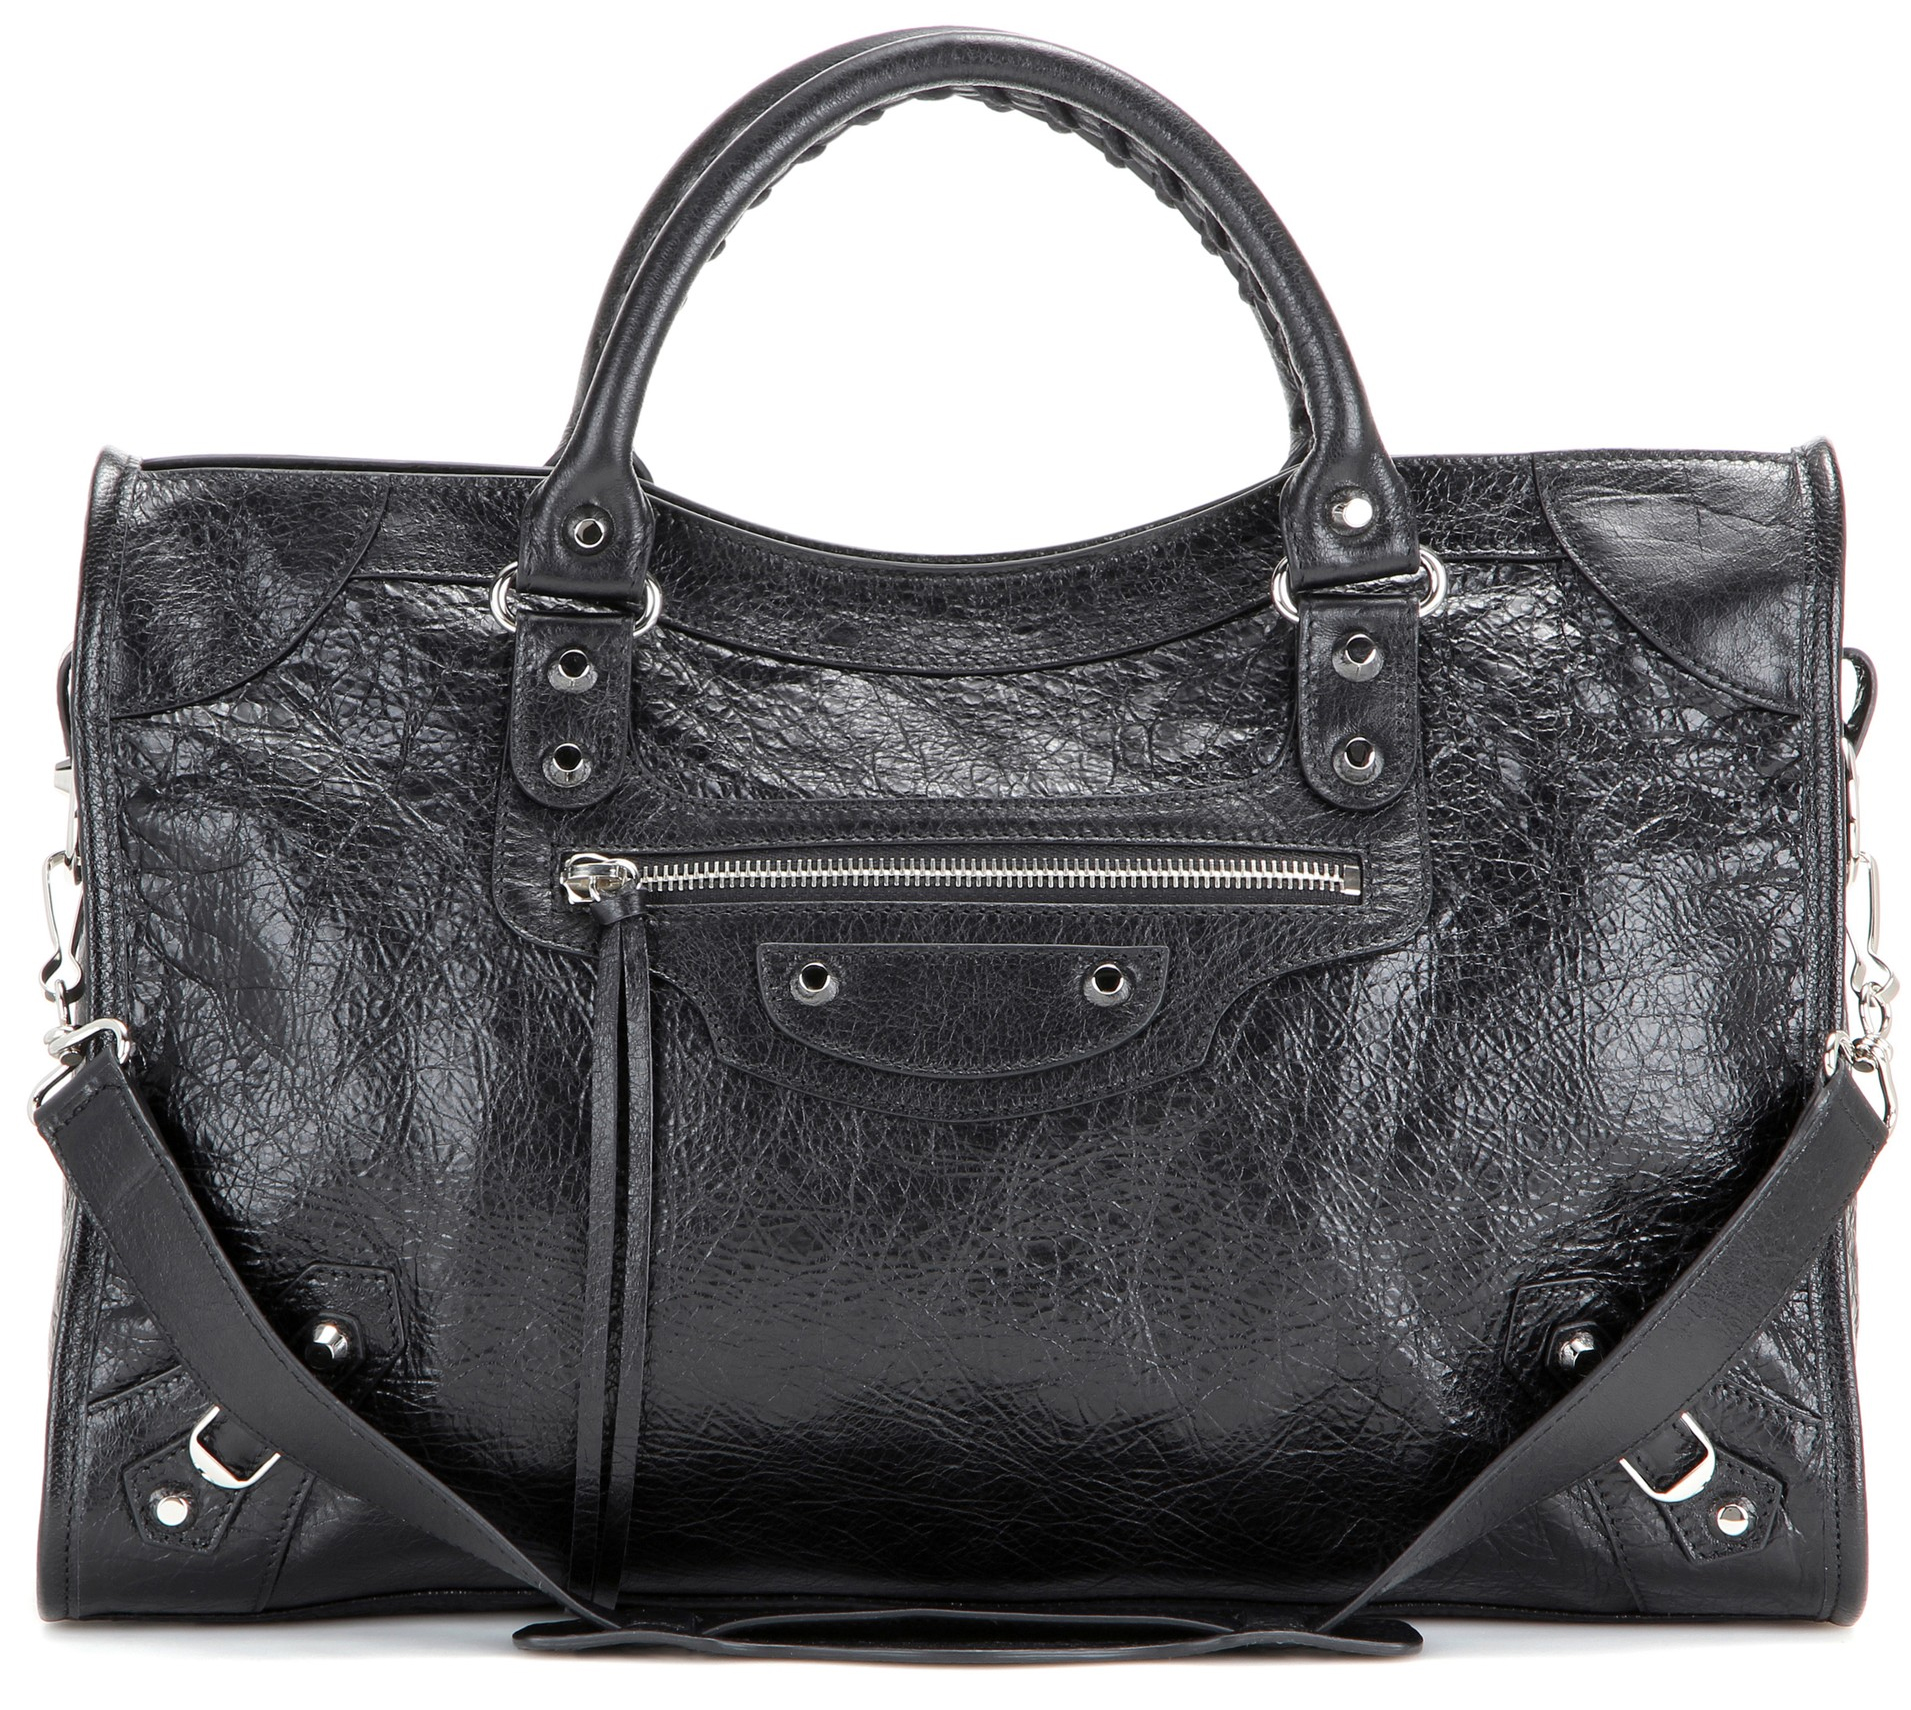 Balenciaga classic city leather tote bag